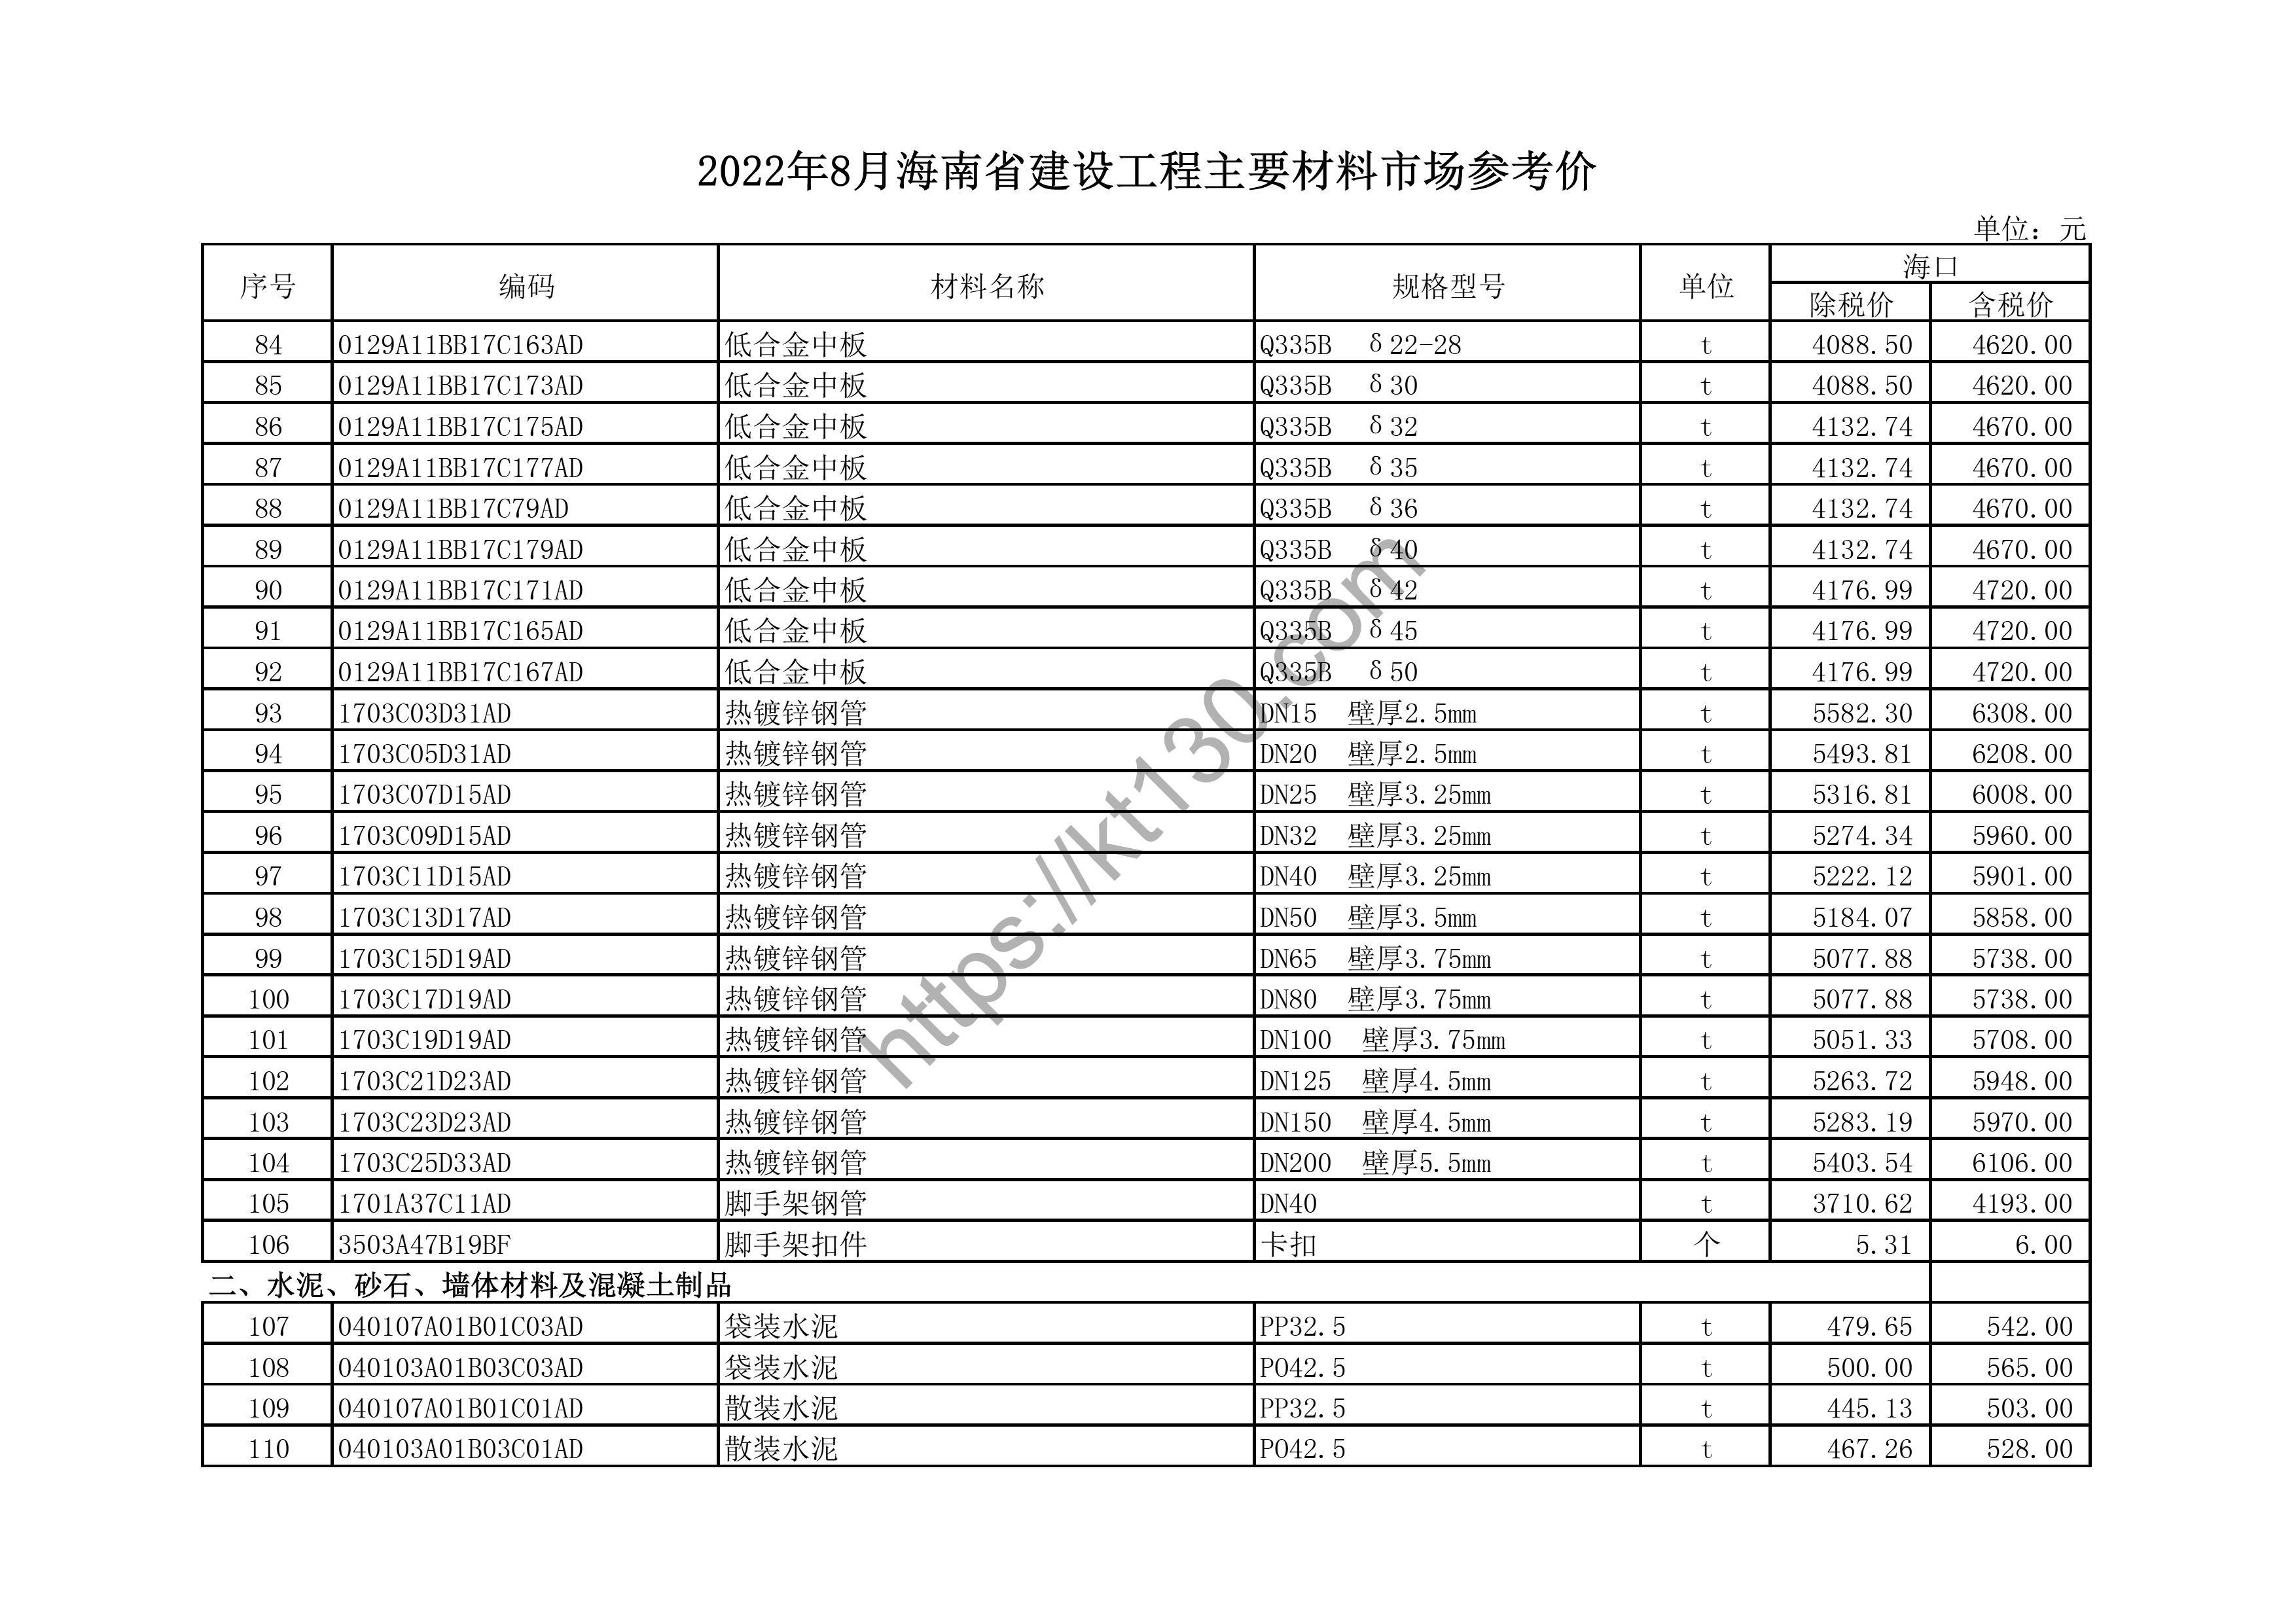 海南省2022年8月建筑材料价_木、竹材料及制品_44585